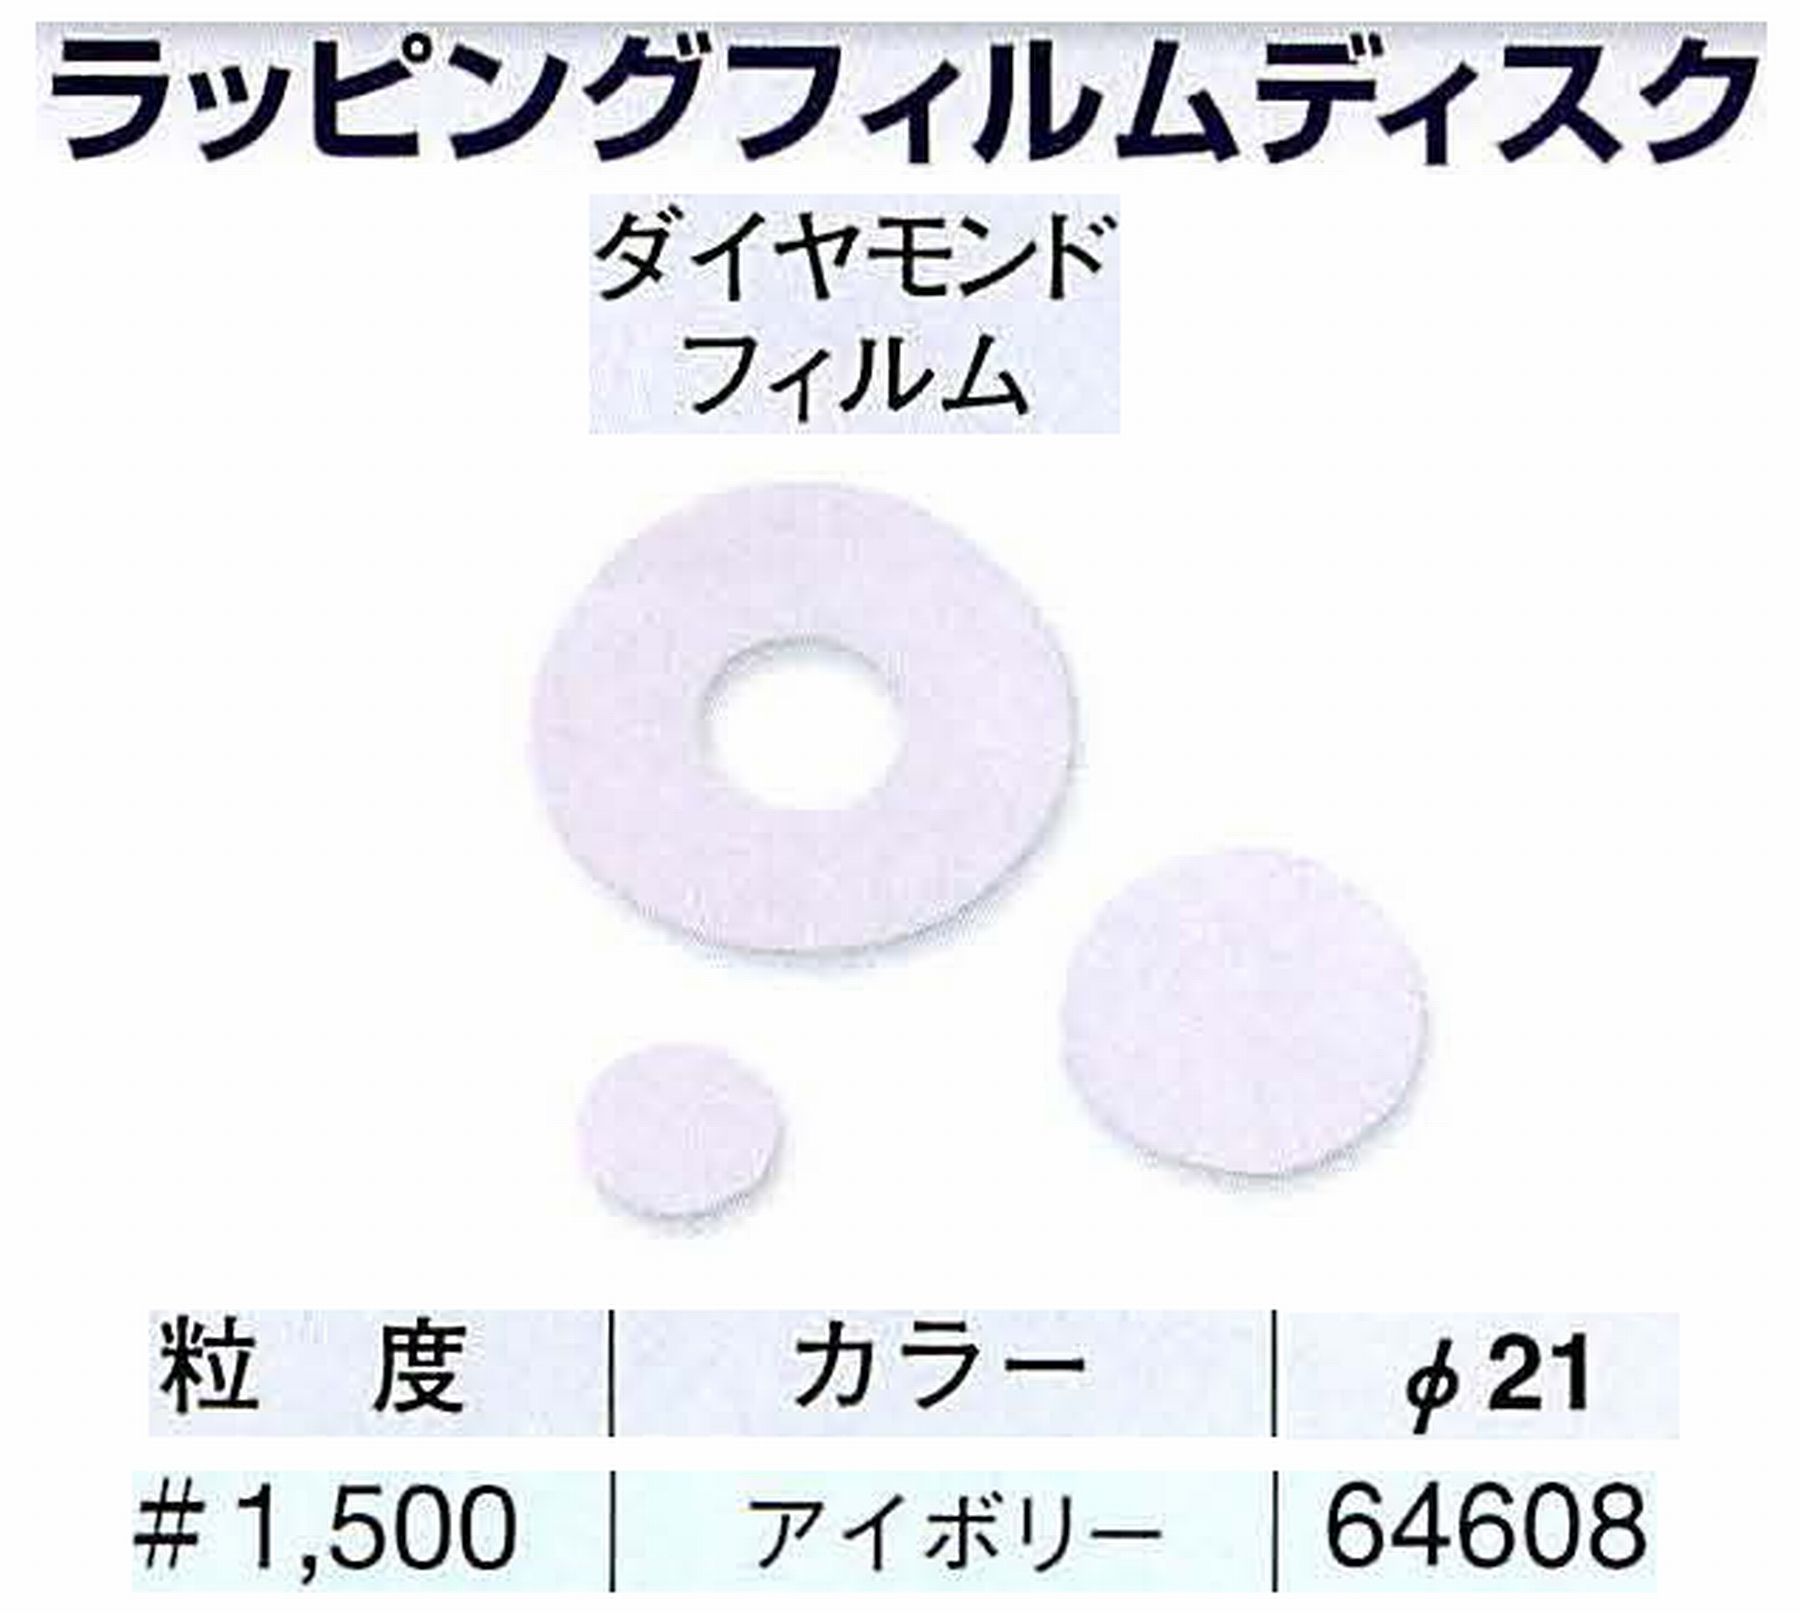 ナカニシ/NAKANISHI アングルグラインダ(電動・エアー) アングルアタッチメント専用工具 ラッピングフィルムディスク(ダイヤモンドフィルム) 64608